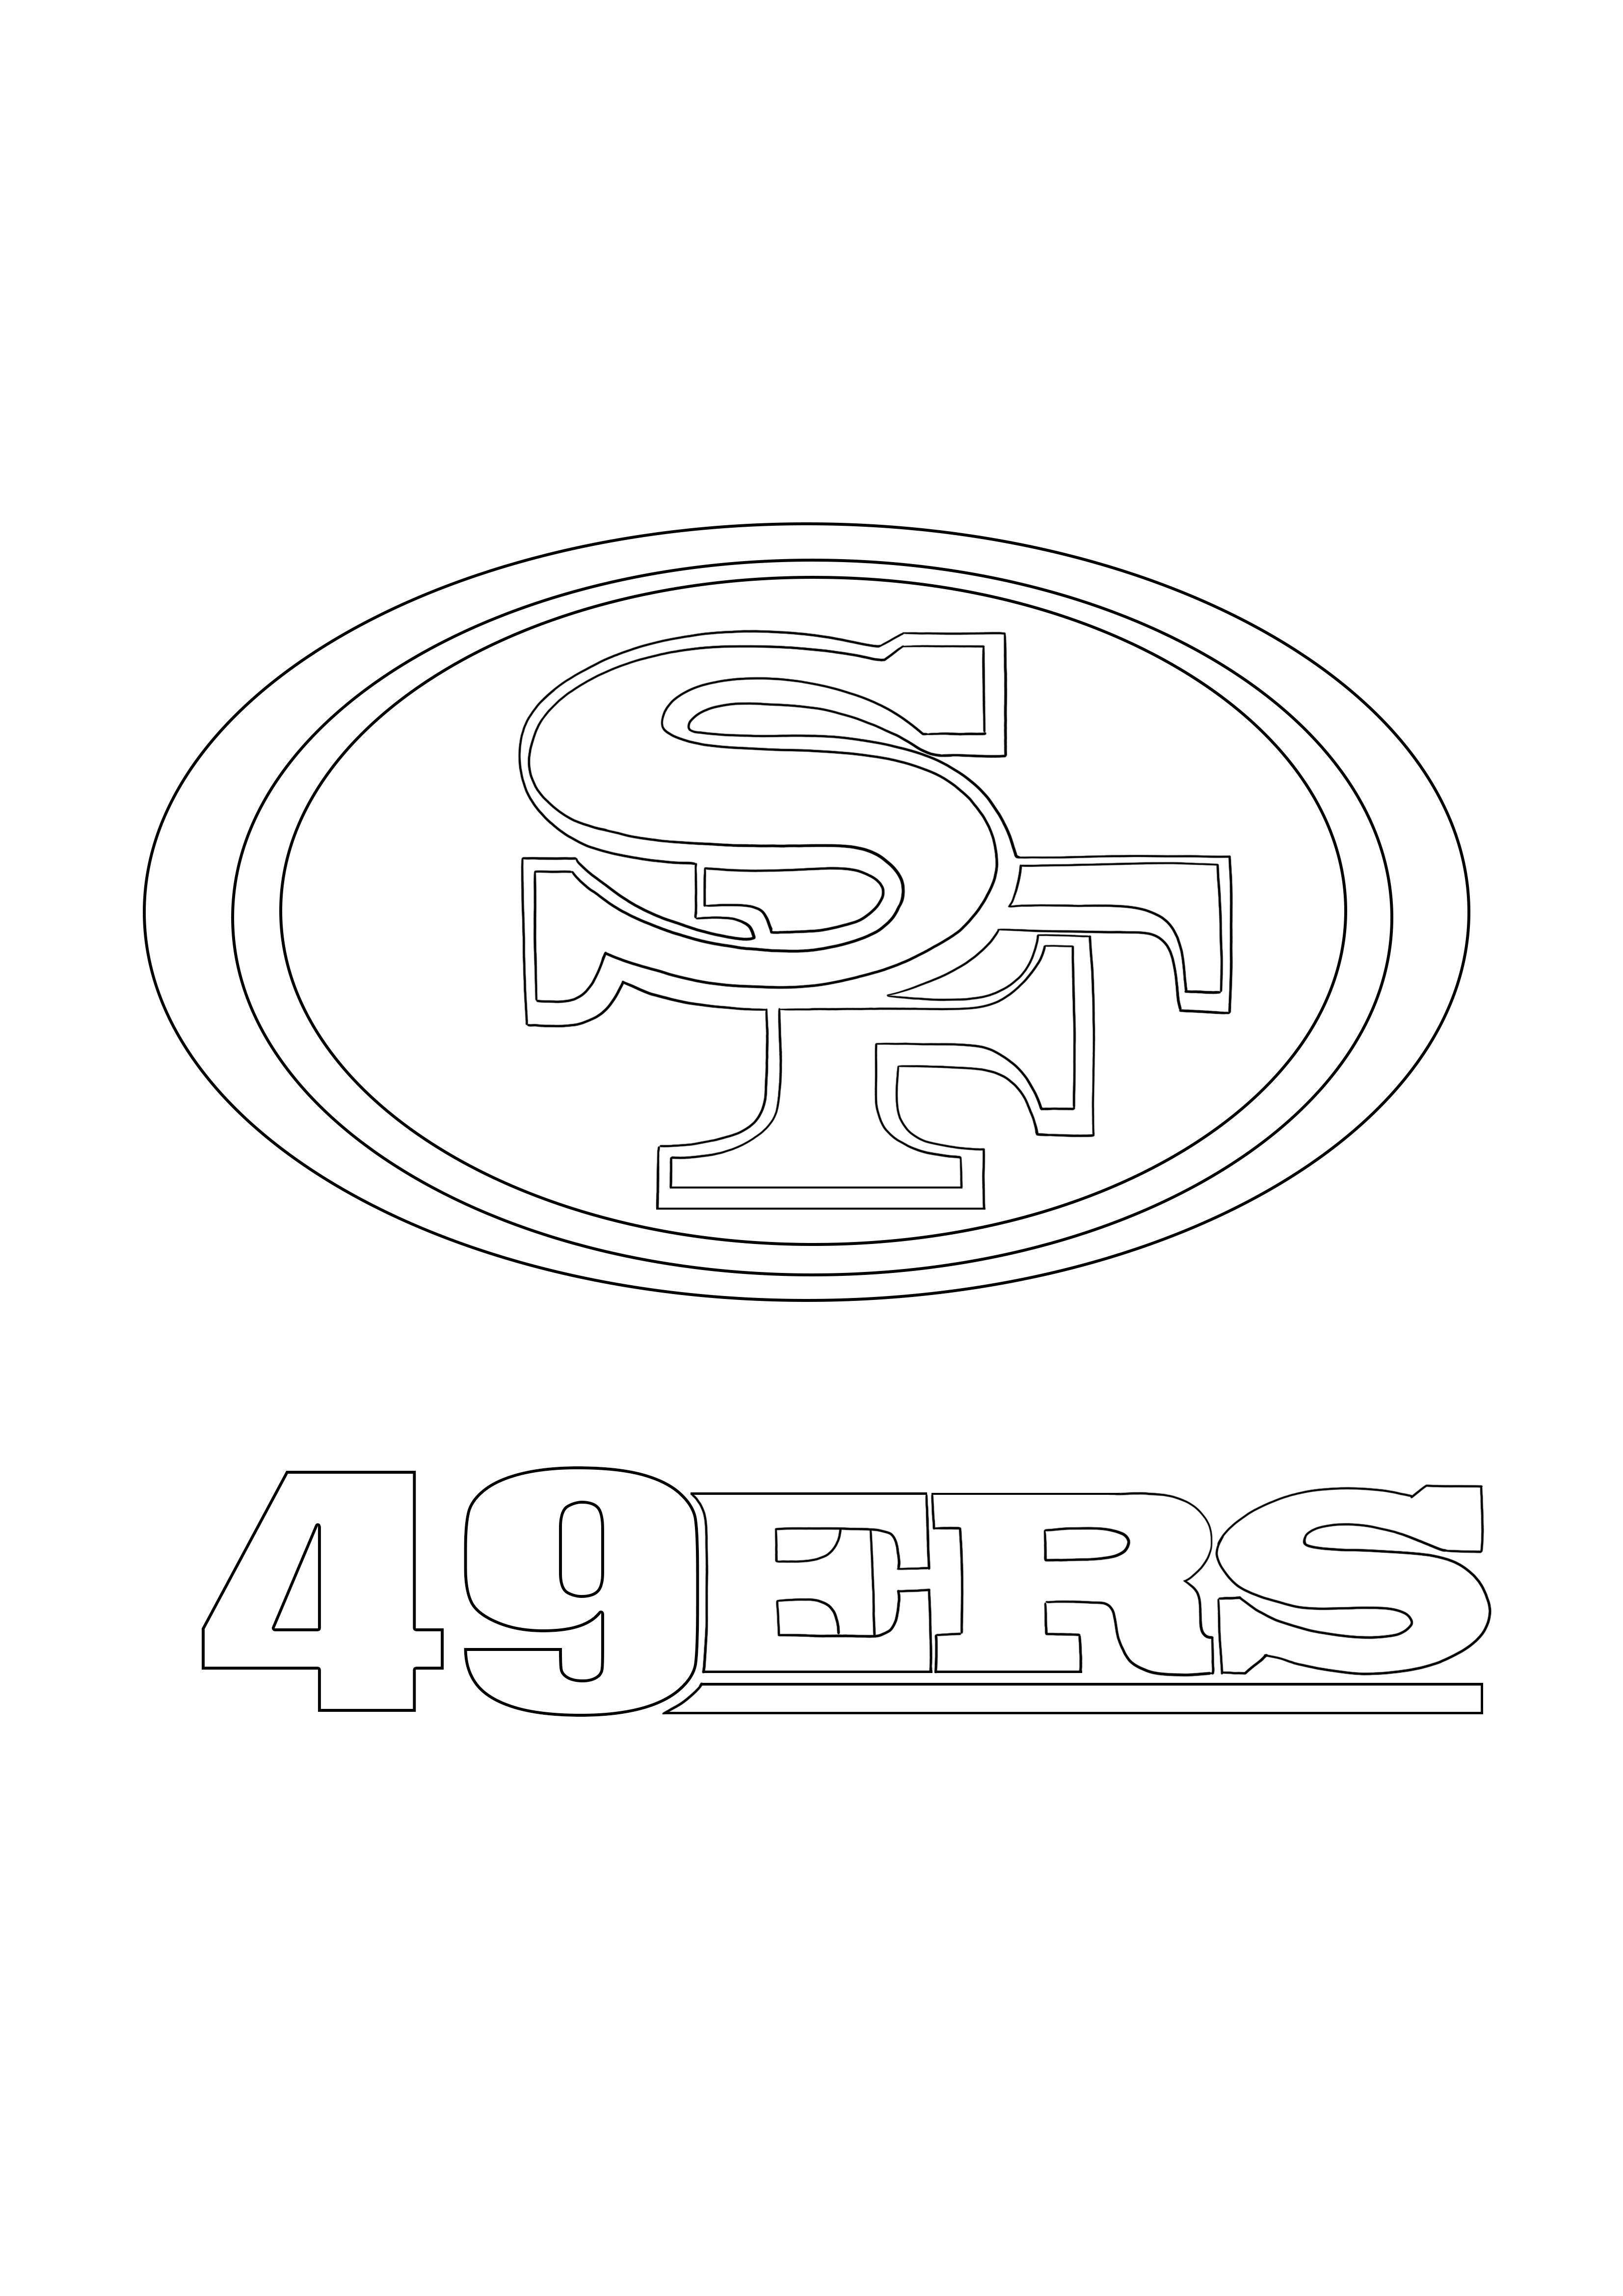 Logo dei San Francisco 49ers da scaricare e colorare gratuitamente